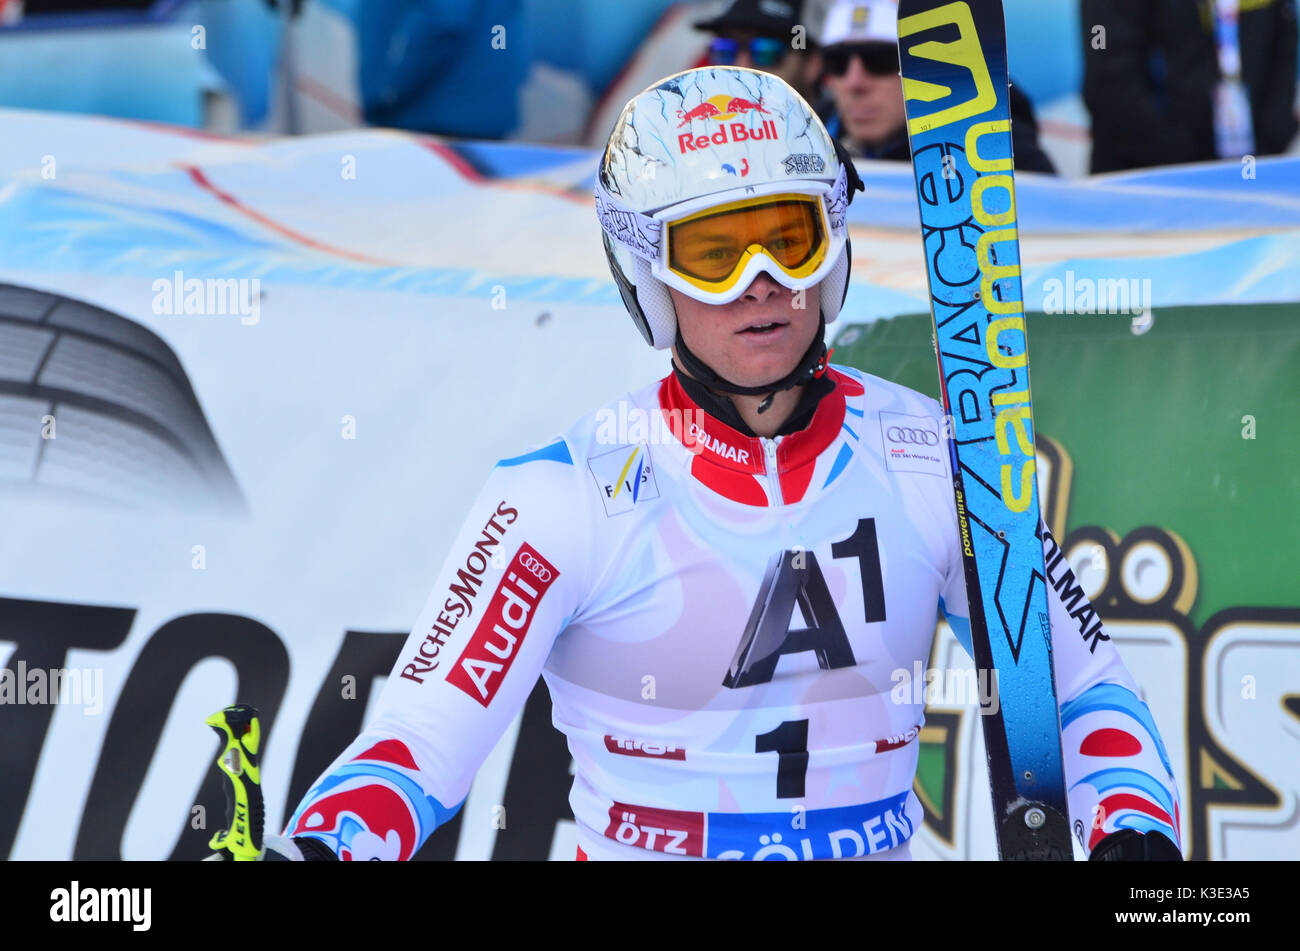 Skiing, ski race, ski world cup, ski racer, Alexis Pinturault, Stock Photo